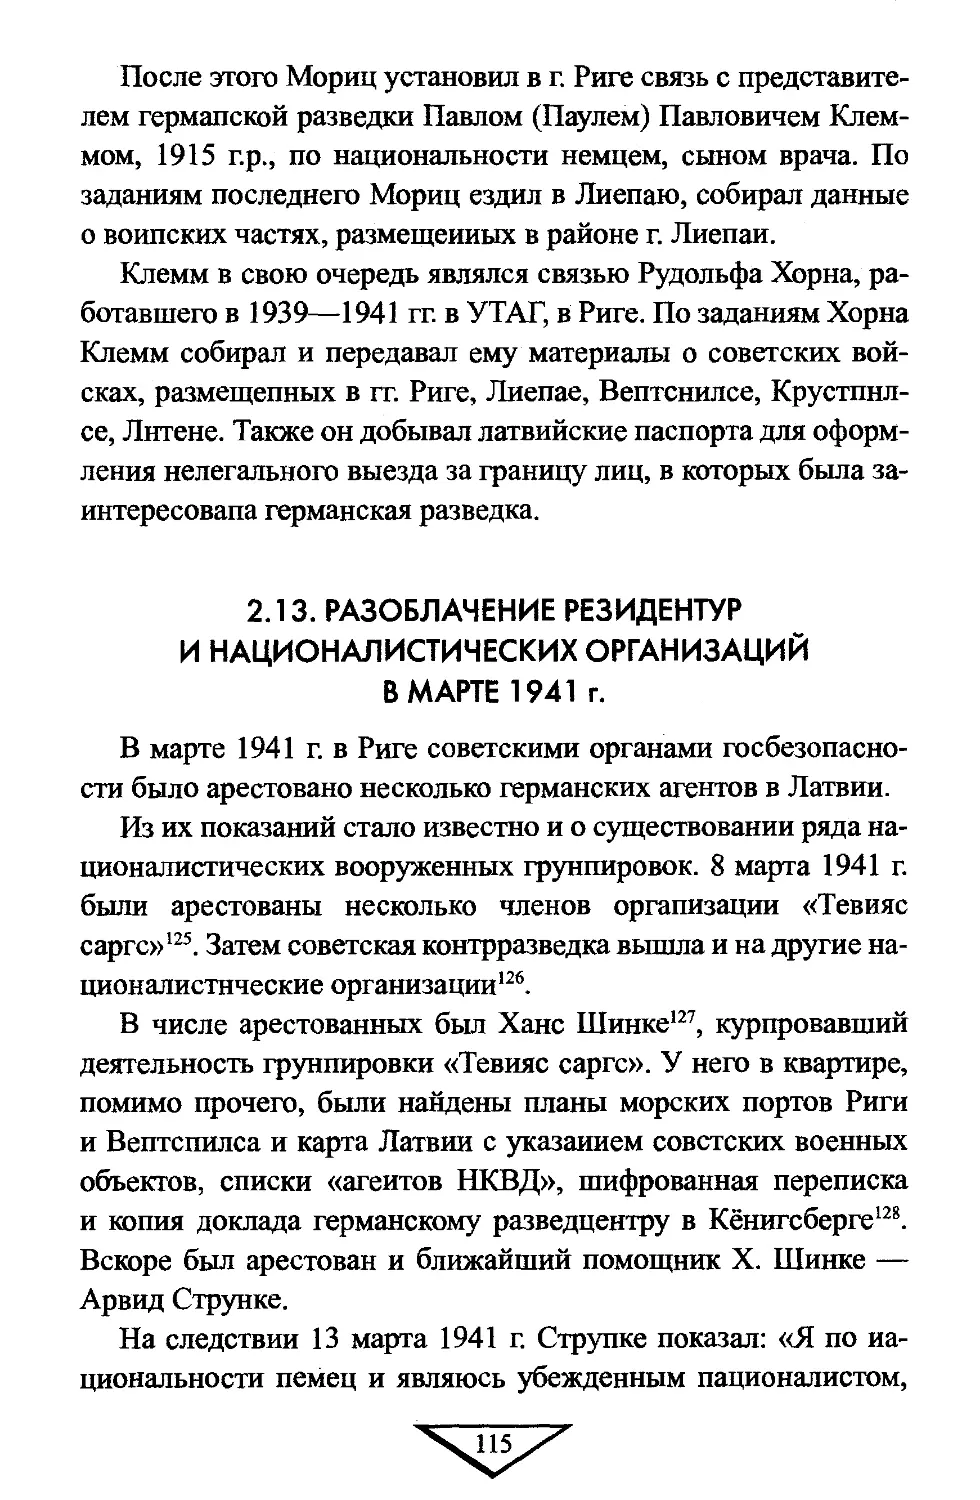 2.13. Разоблачение резидентур и националистических организаций в марте 1941 г